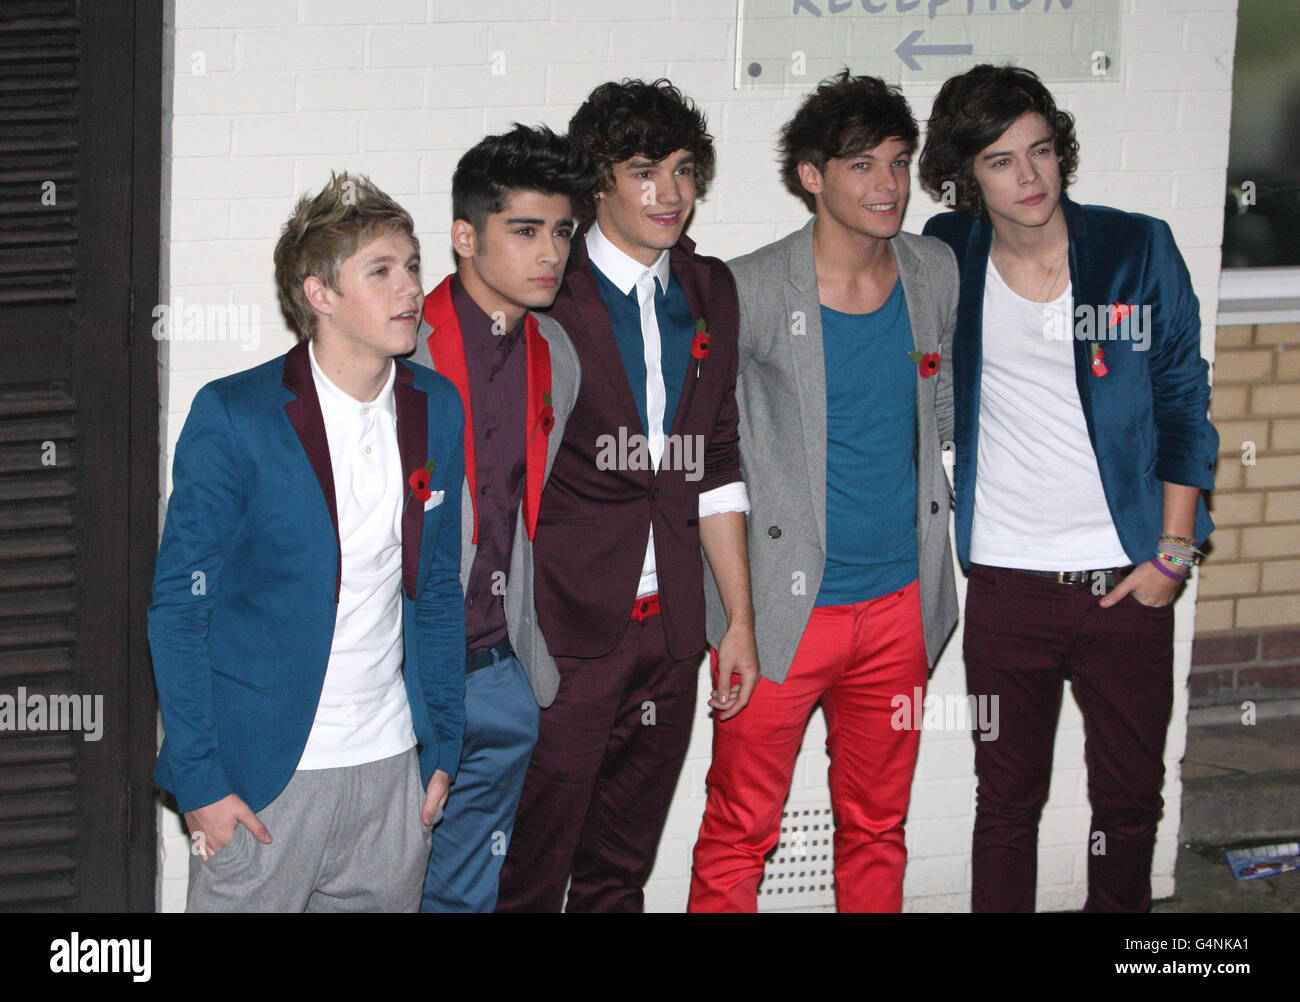 Boy band One Direction, from left, Niall Horan, Zayn Malik, Liam